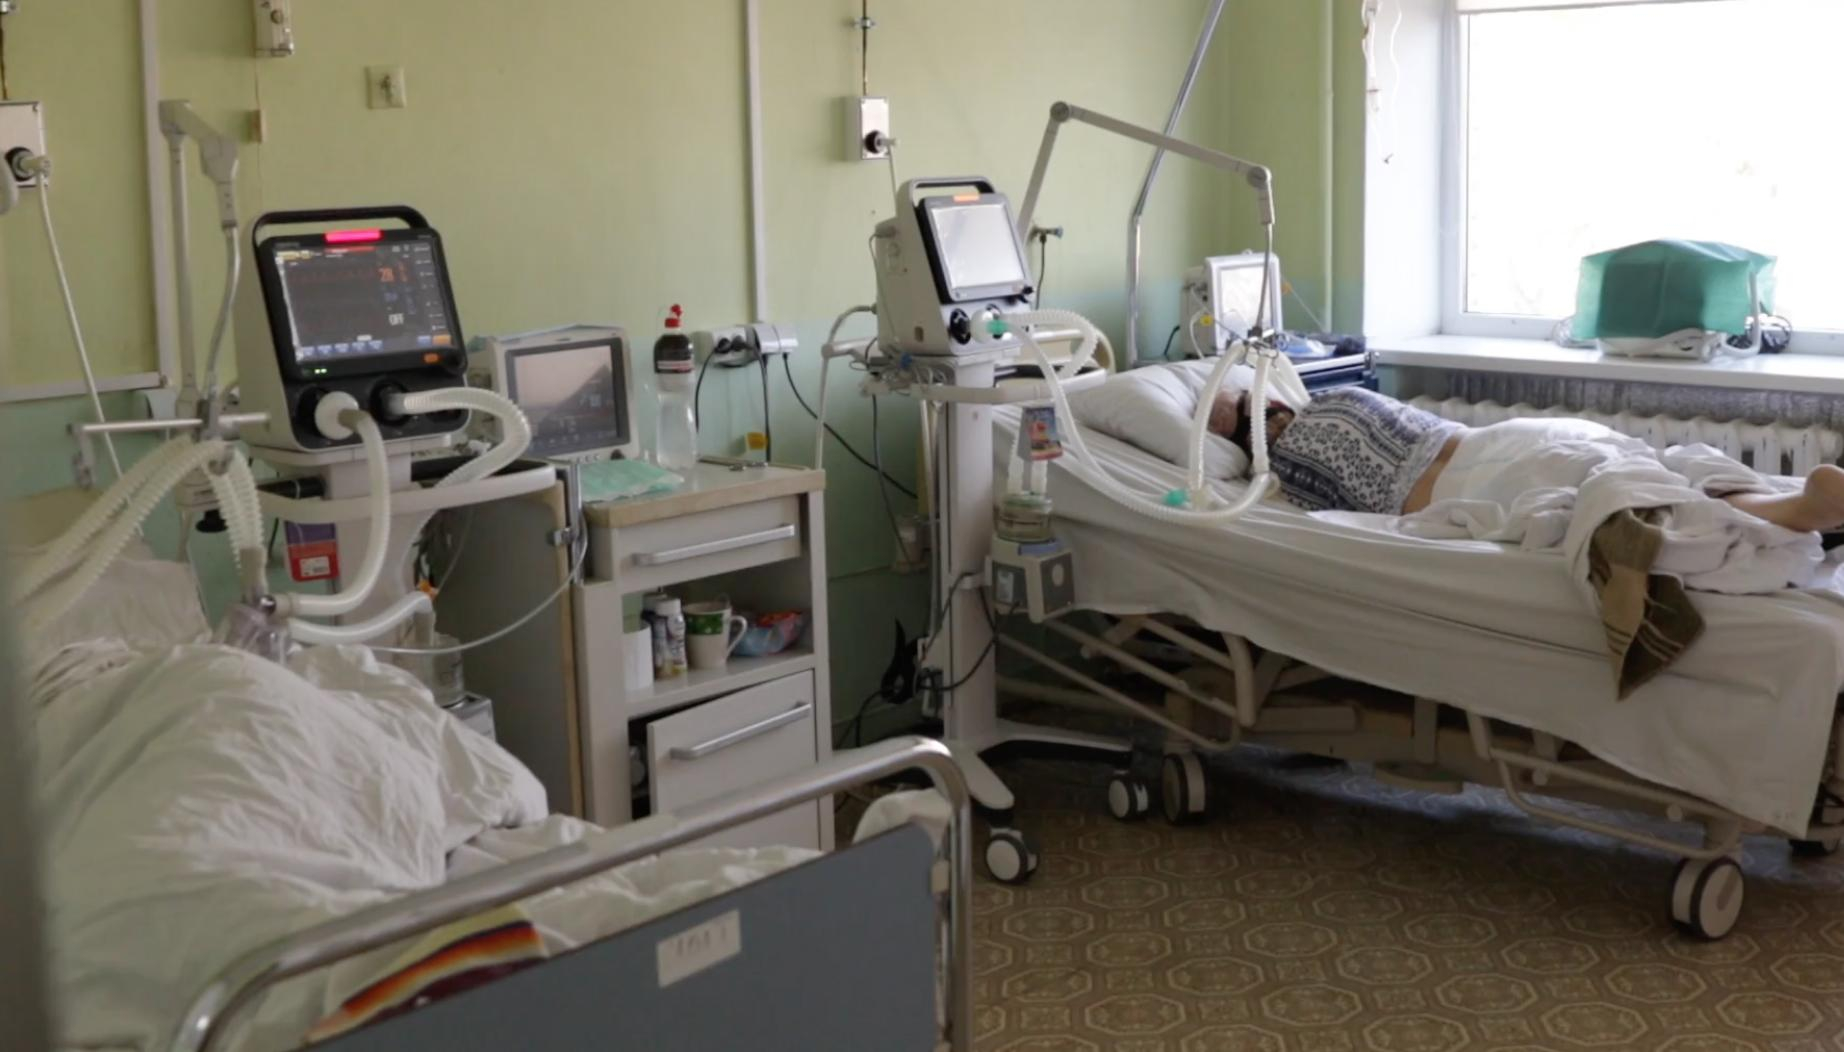 Помер від інсульту, бо все зайняте COVID-пацієнтами, – волонтерка про колапс в лікарнях Одеси - Новини Одеси сьогодні - Новини Здоров’я